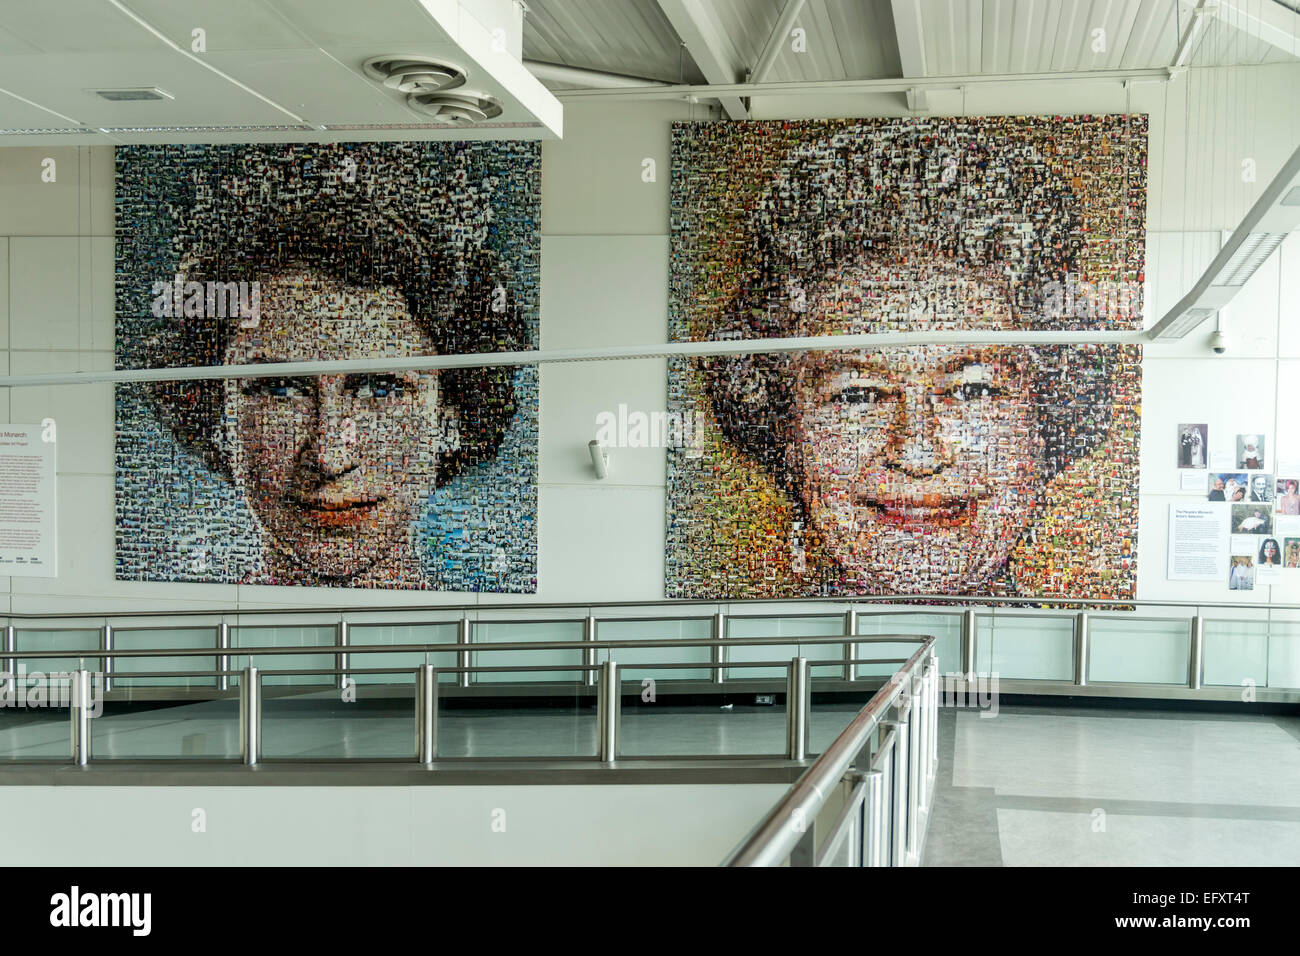 La Reine, de l'Art par Helen Marchall, 5500 photos d'une mosaïque de célébrer le Jubilé de diamant de Sa Majesté , l'aéroport de Gatwick, Londo Banque D'Images